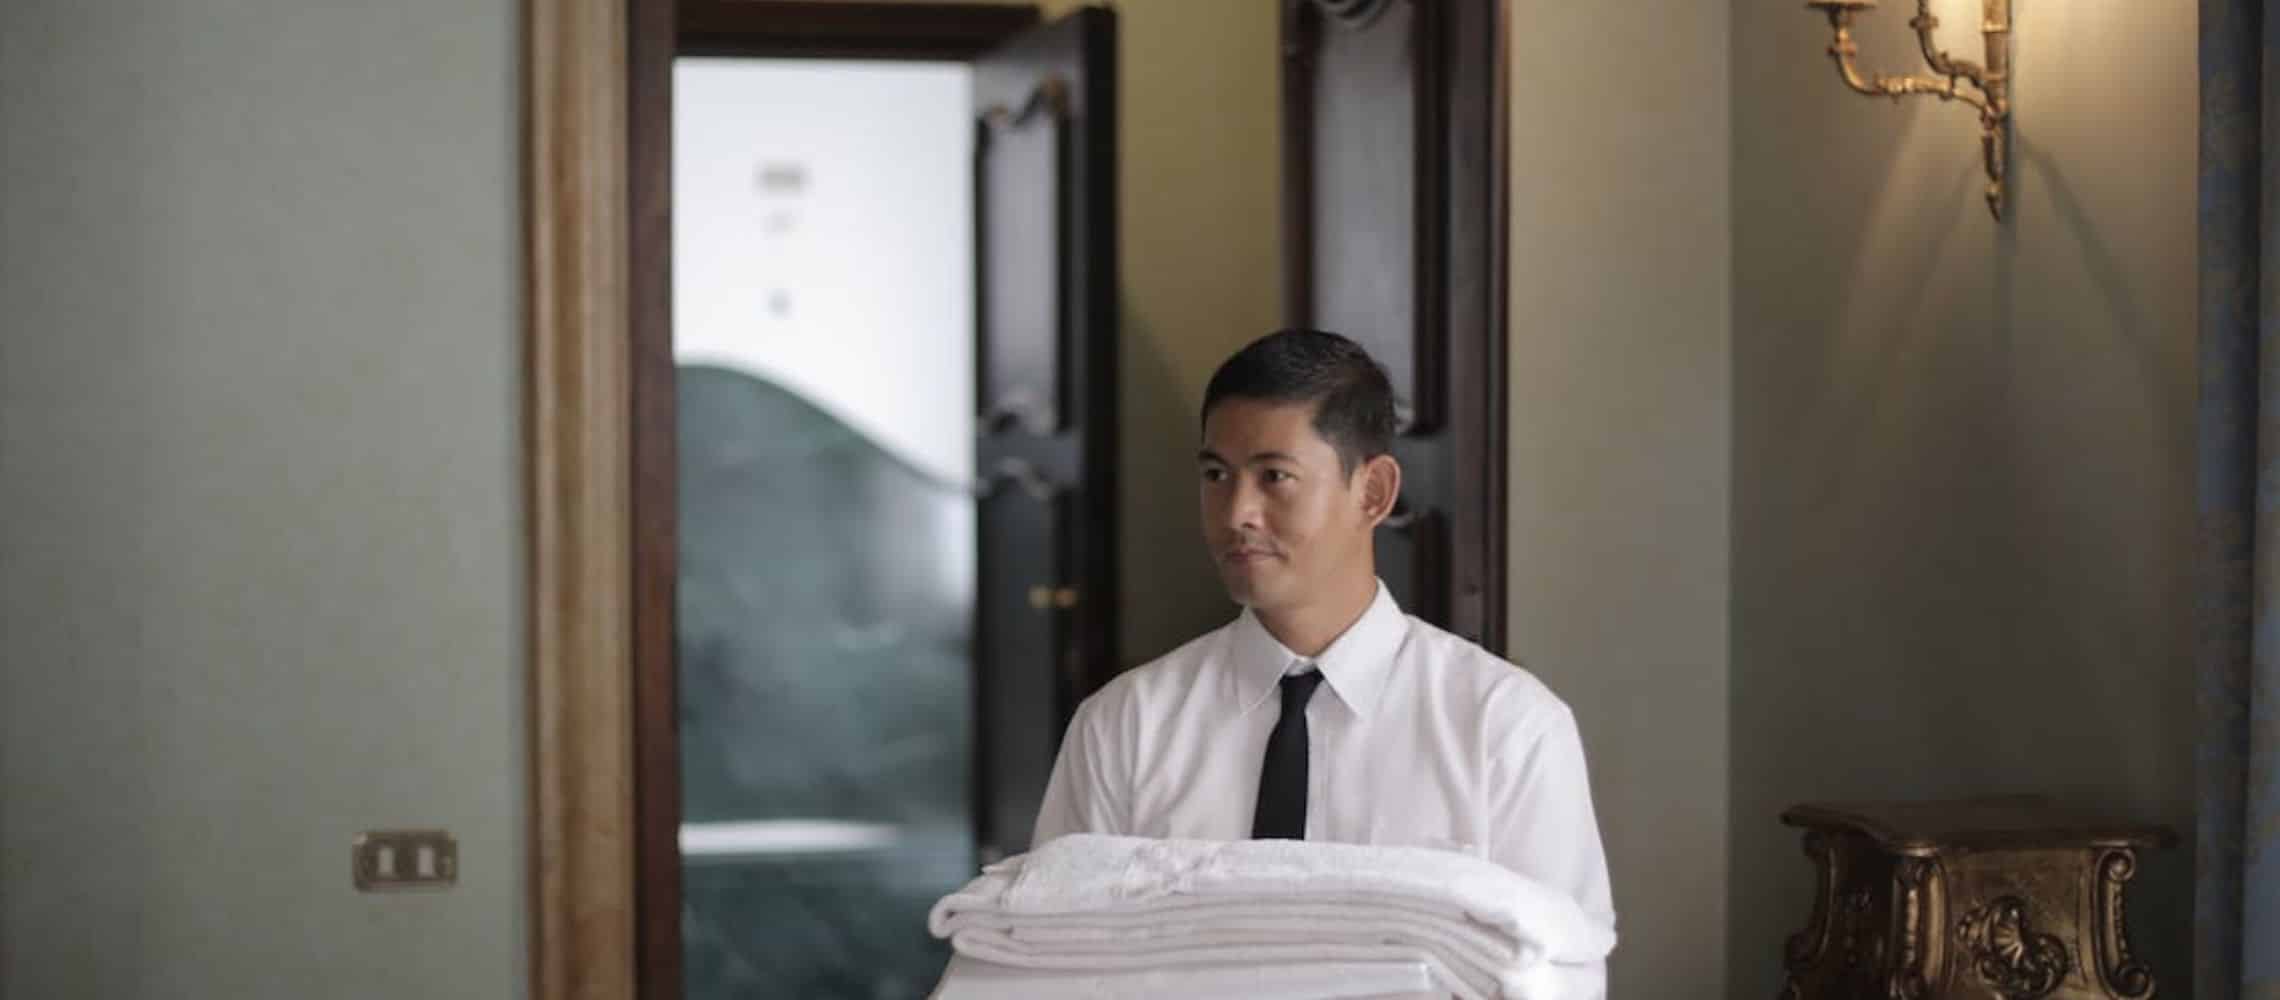 Hotel voor verkoop aanbieden de impact van de corona pandemie